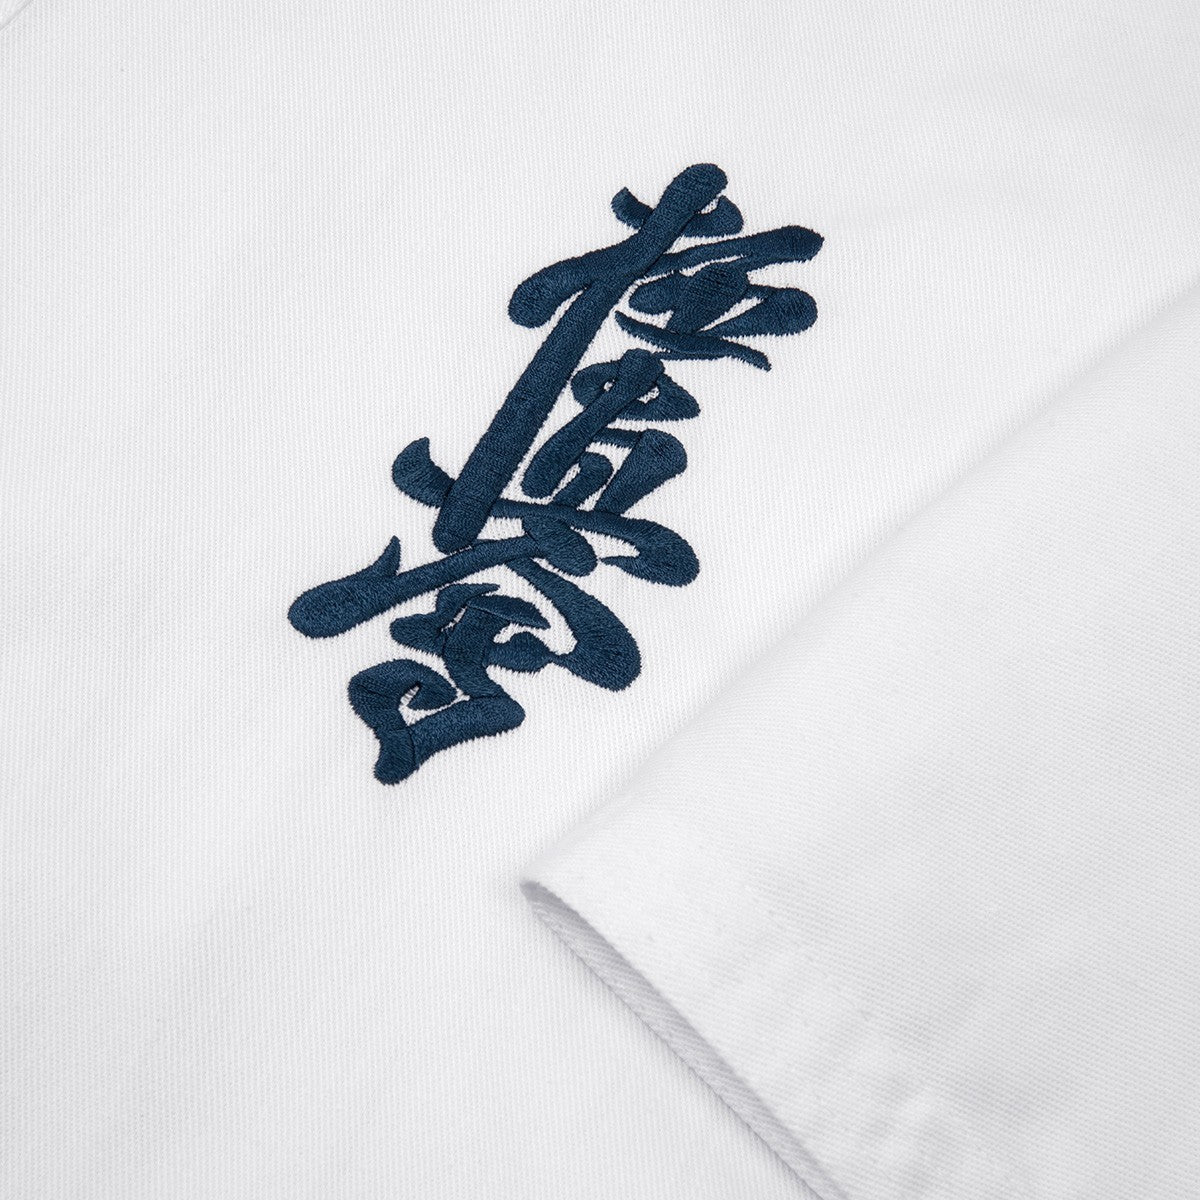 Kimono Karaté Kyokushin Fuji Mae - Basic